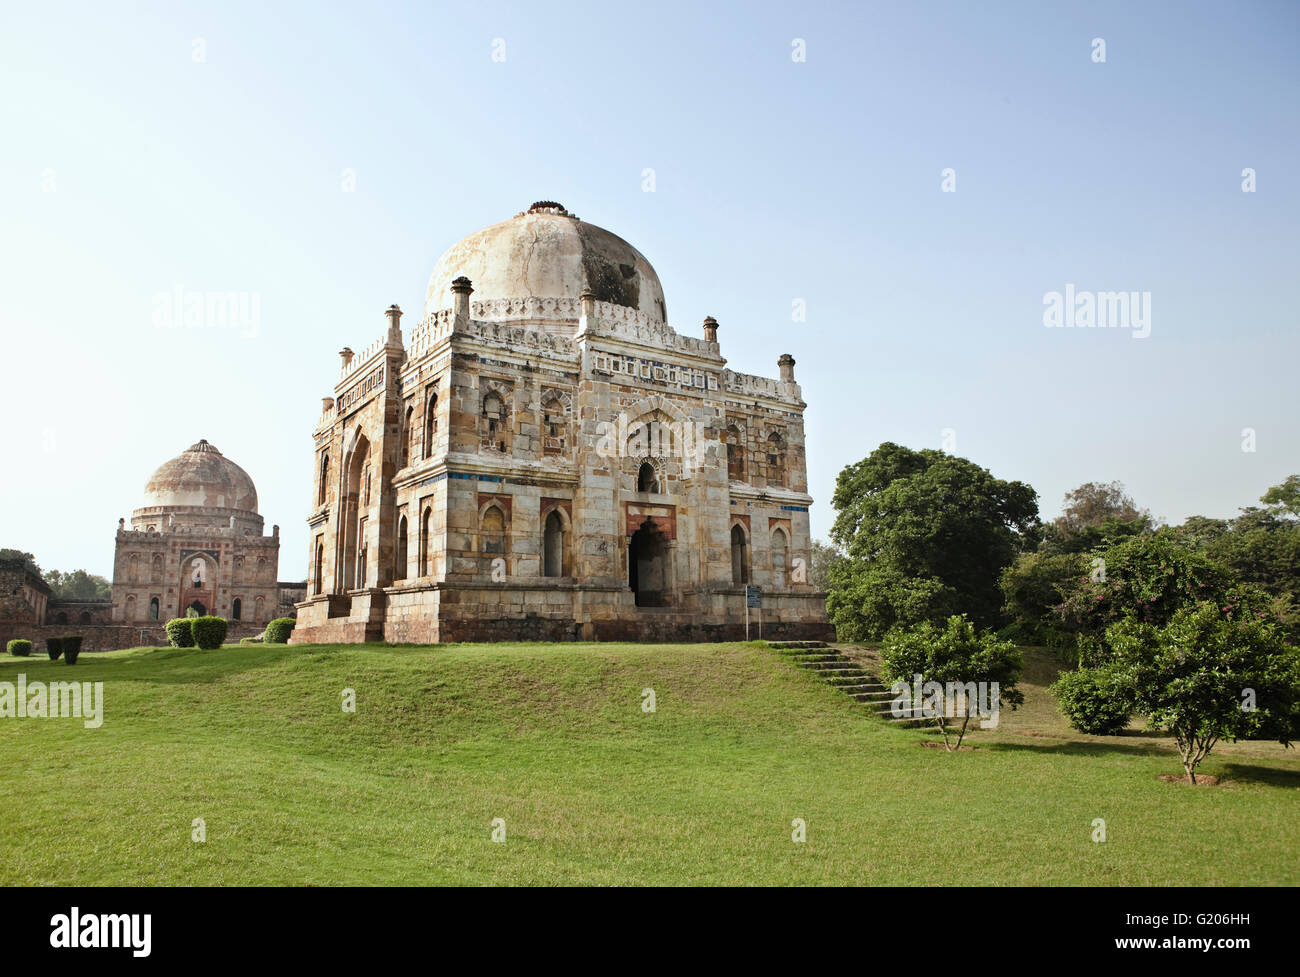 Shish-Gumbad Grab (Vordergrund) und das Bara-Gumbad Grab (Hintergrund) in Lodi Gardens, New Delhi, Indien. Stockfoto